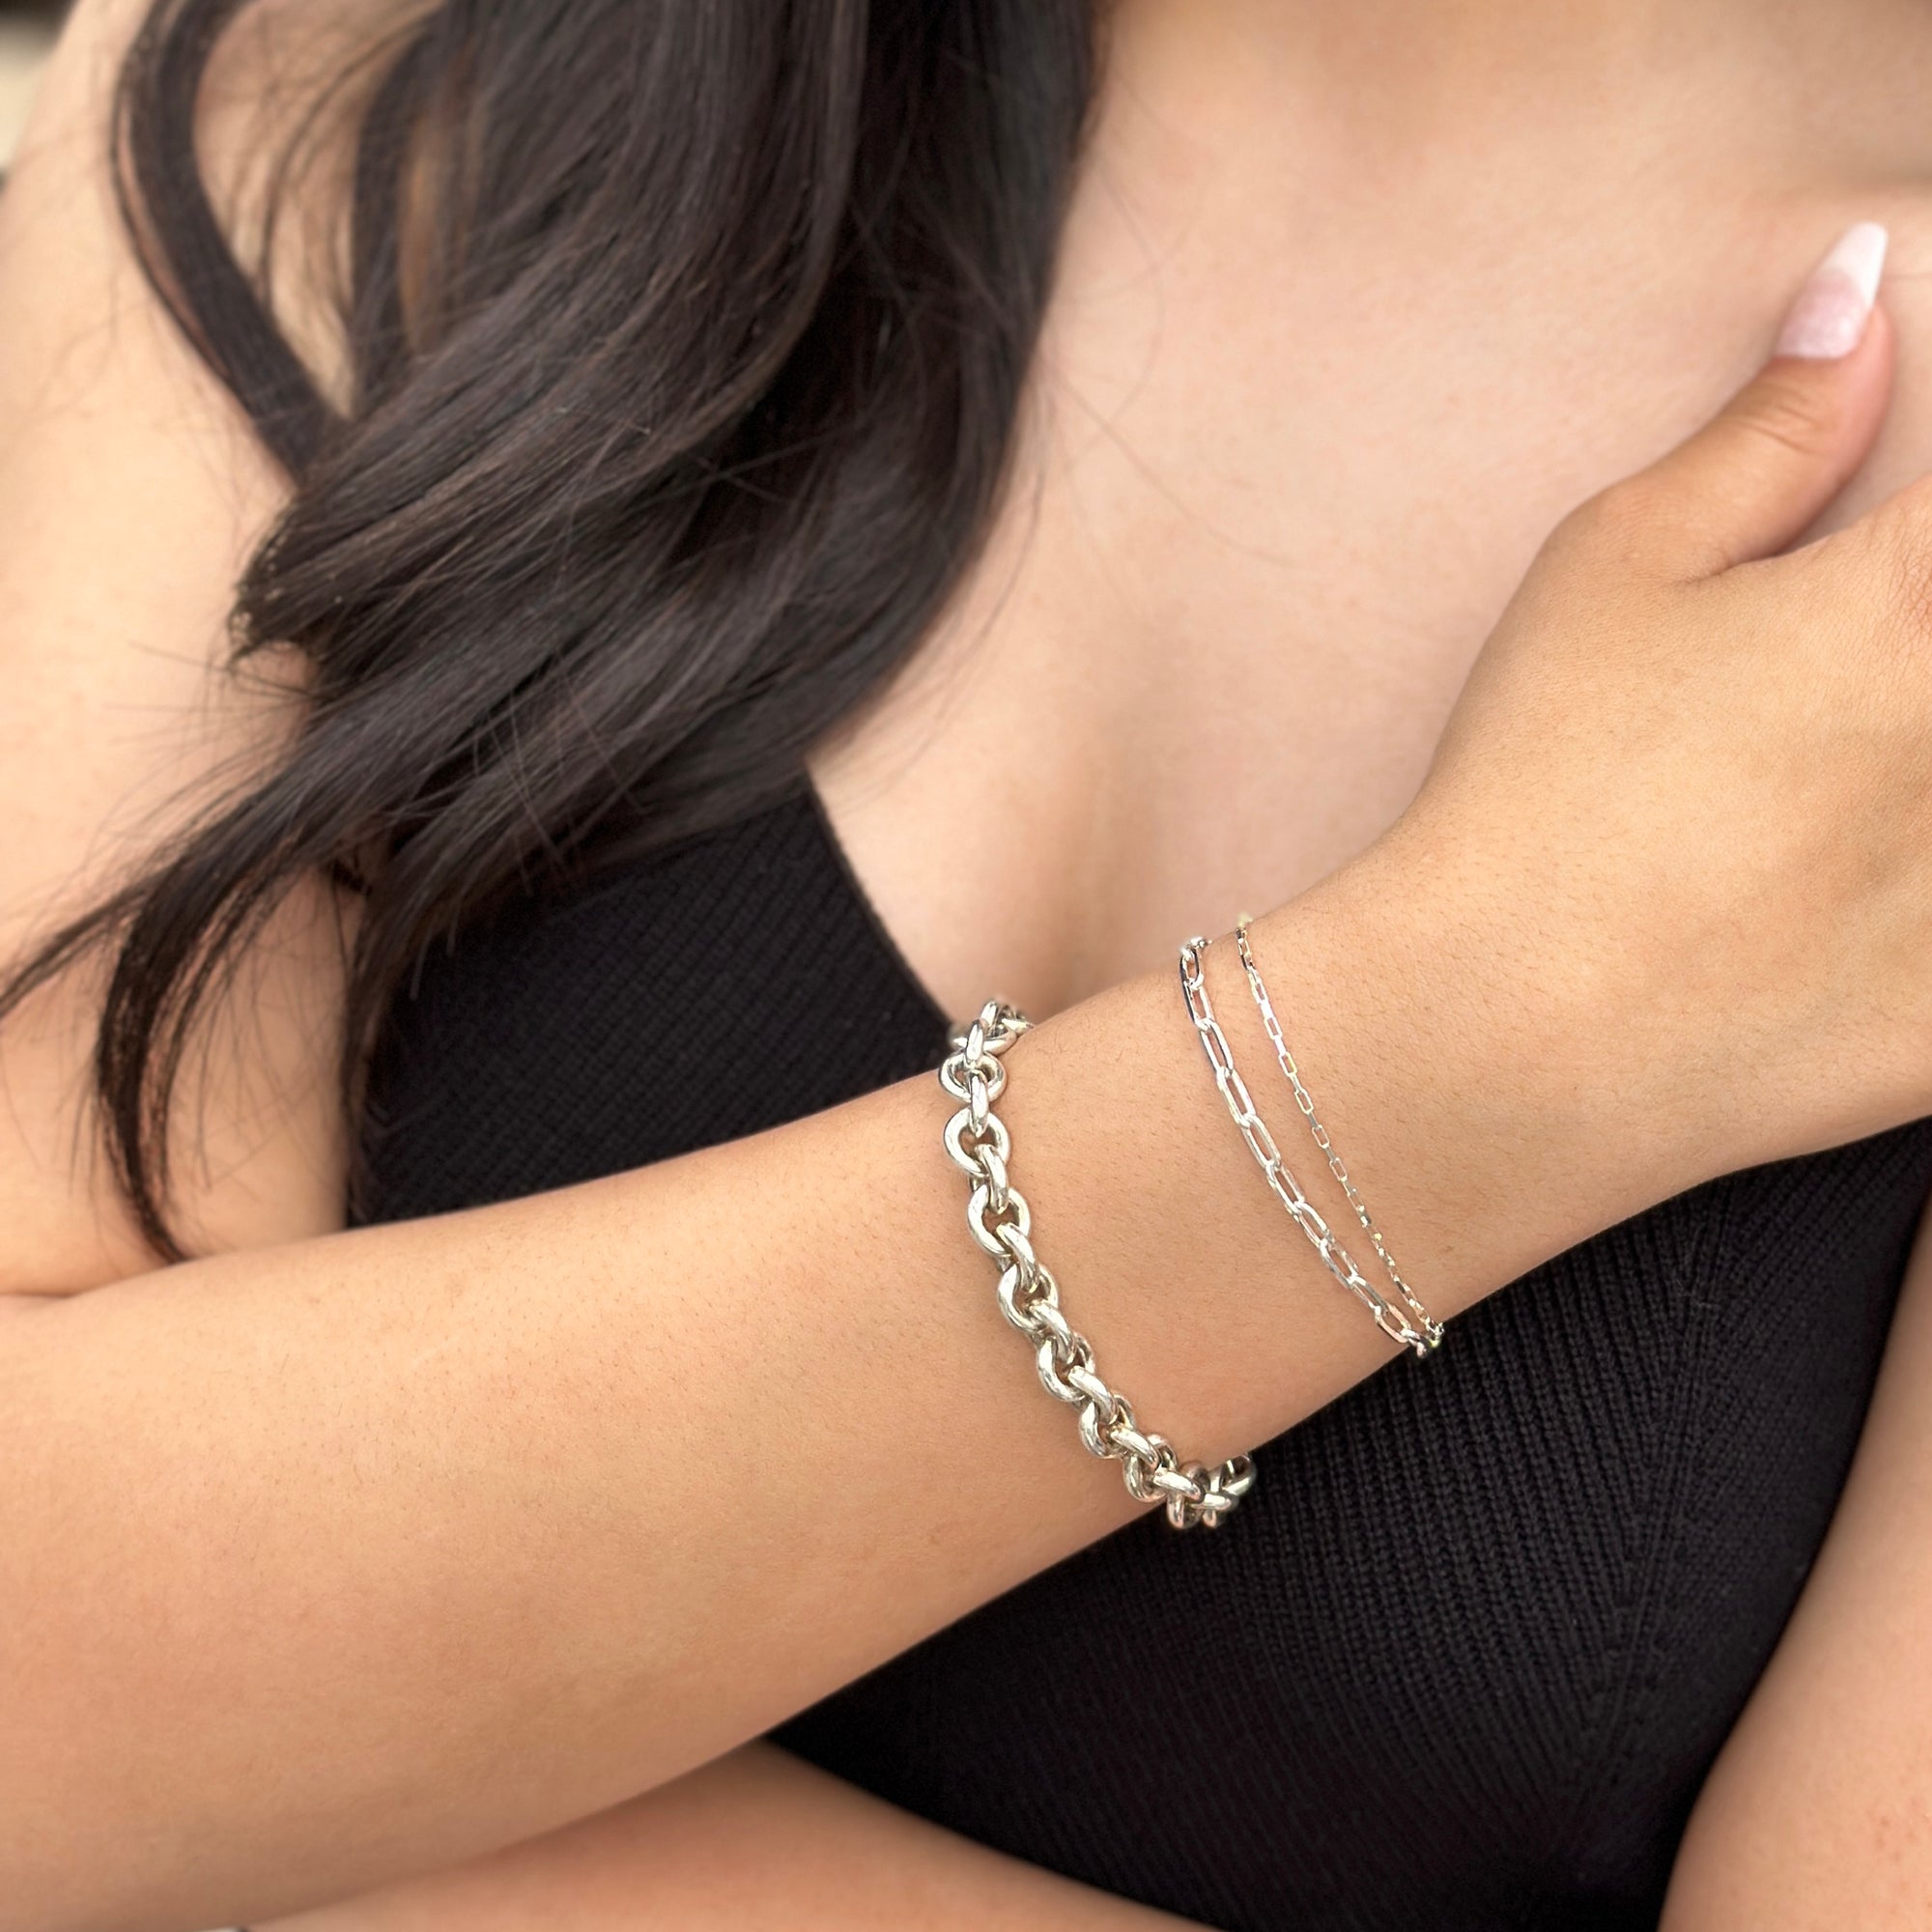 women with tan skin wearing bright silver bracelets